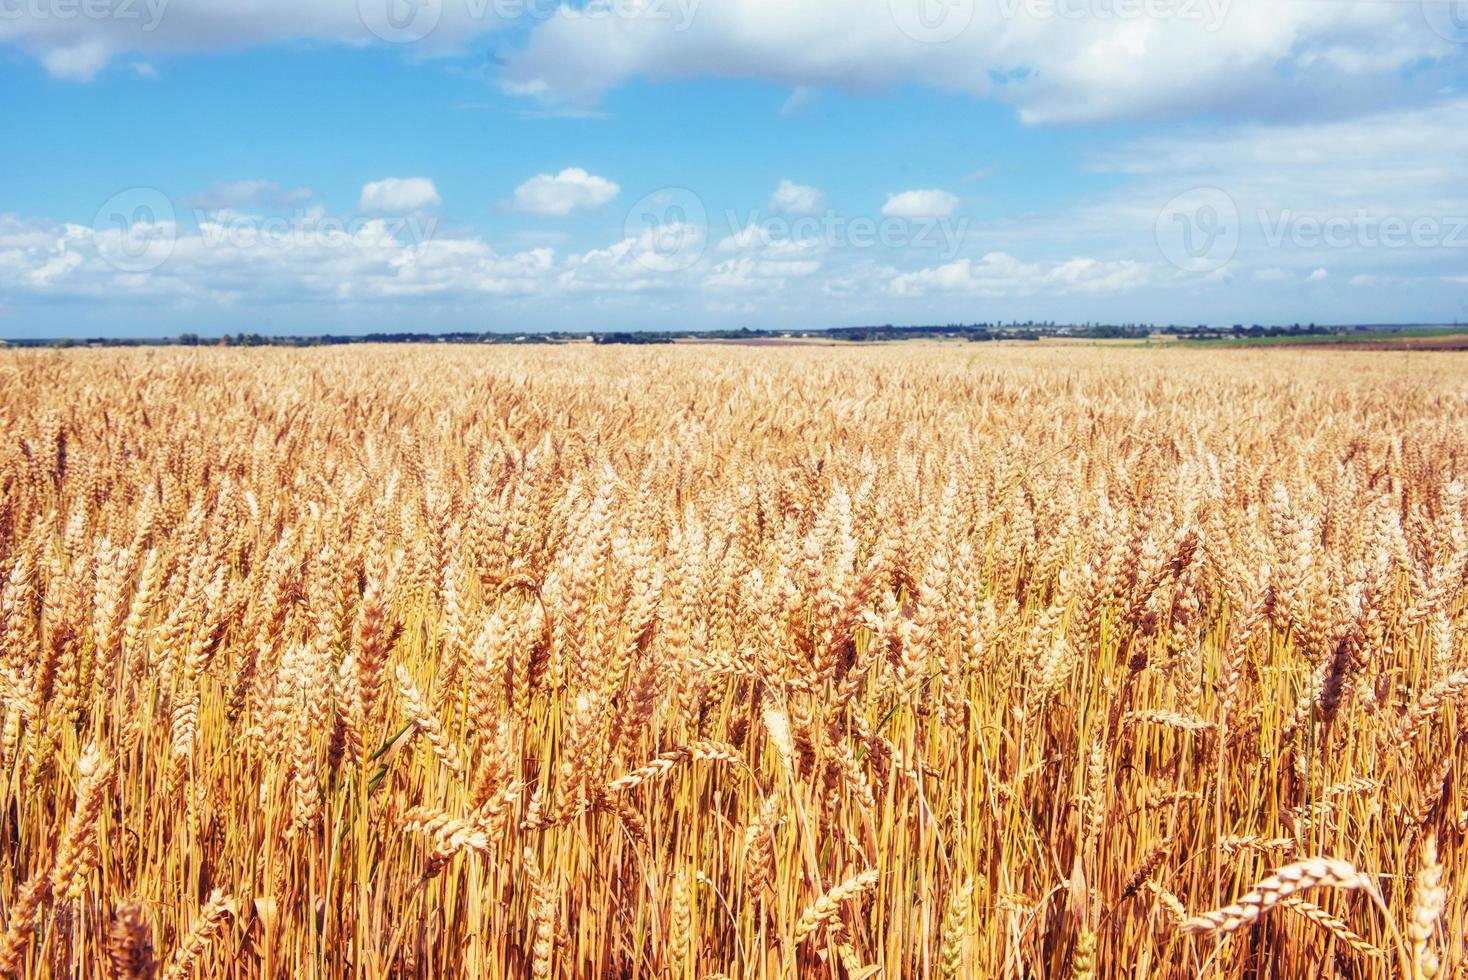 céu azul e campo de trigo dourado. foto